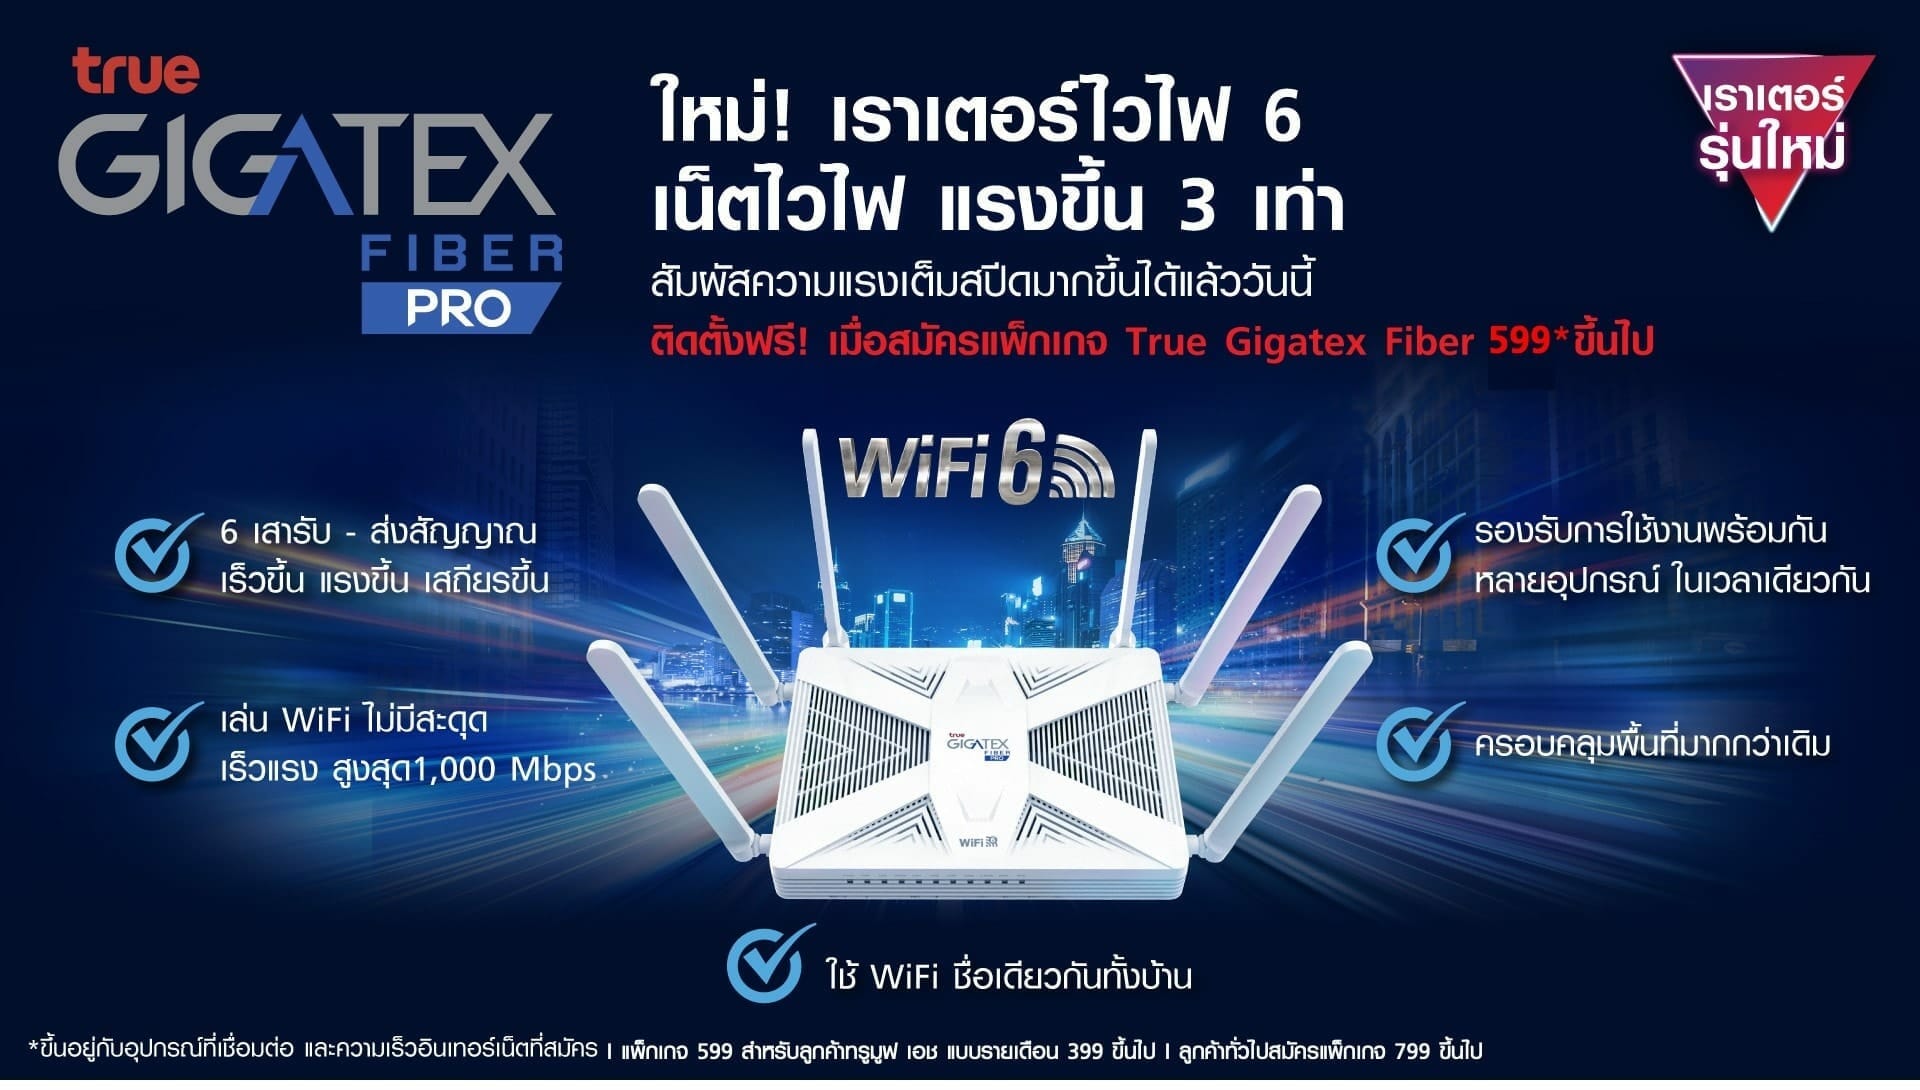 ทรูออนไลน์ เผยโฉมสุดยอดนวัตกรรม True Gigatex Fiber PRO เราเตอร์อัจฉริยะ WiFi6 รุ่นใหม่ล่าสุด สัมผัสความเร็ว แรงเหนือกว่าใคร 5